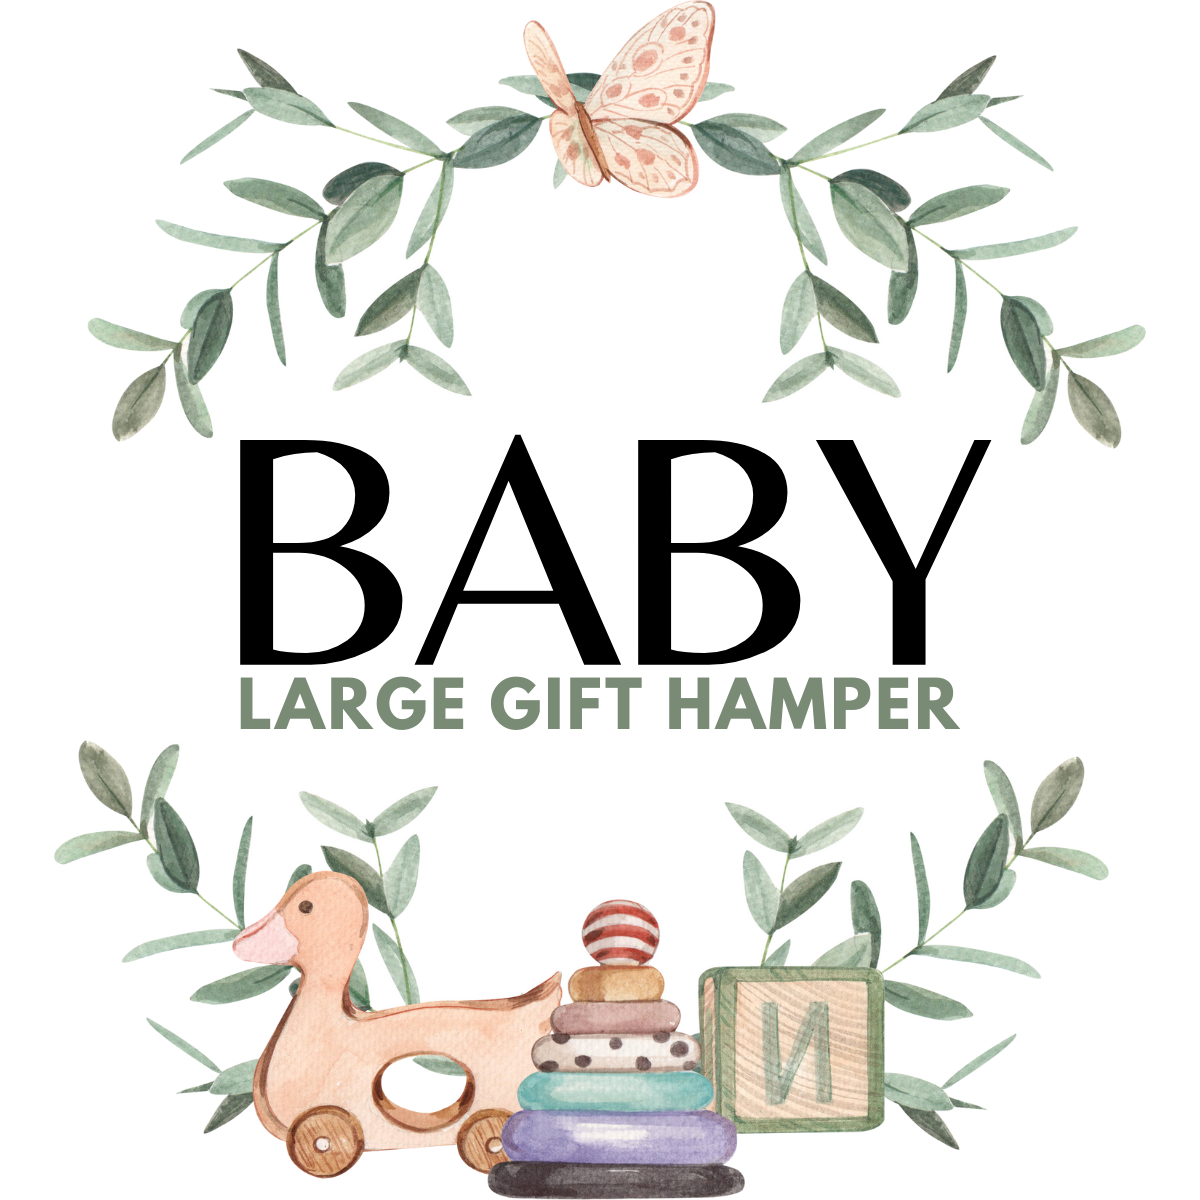 Baby Gift Hamper Large